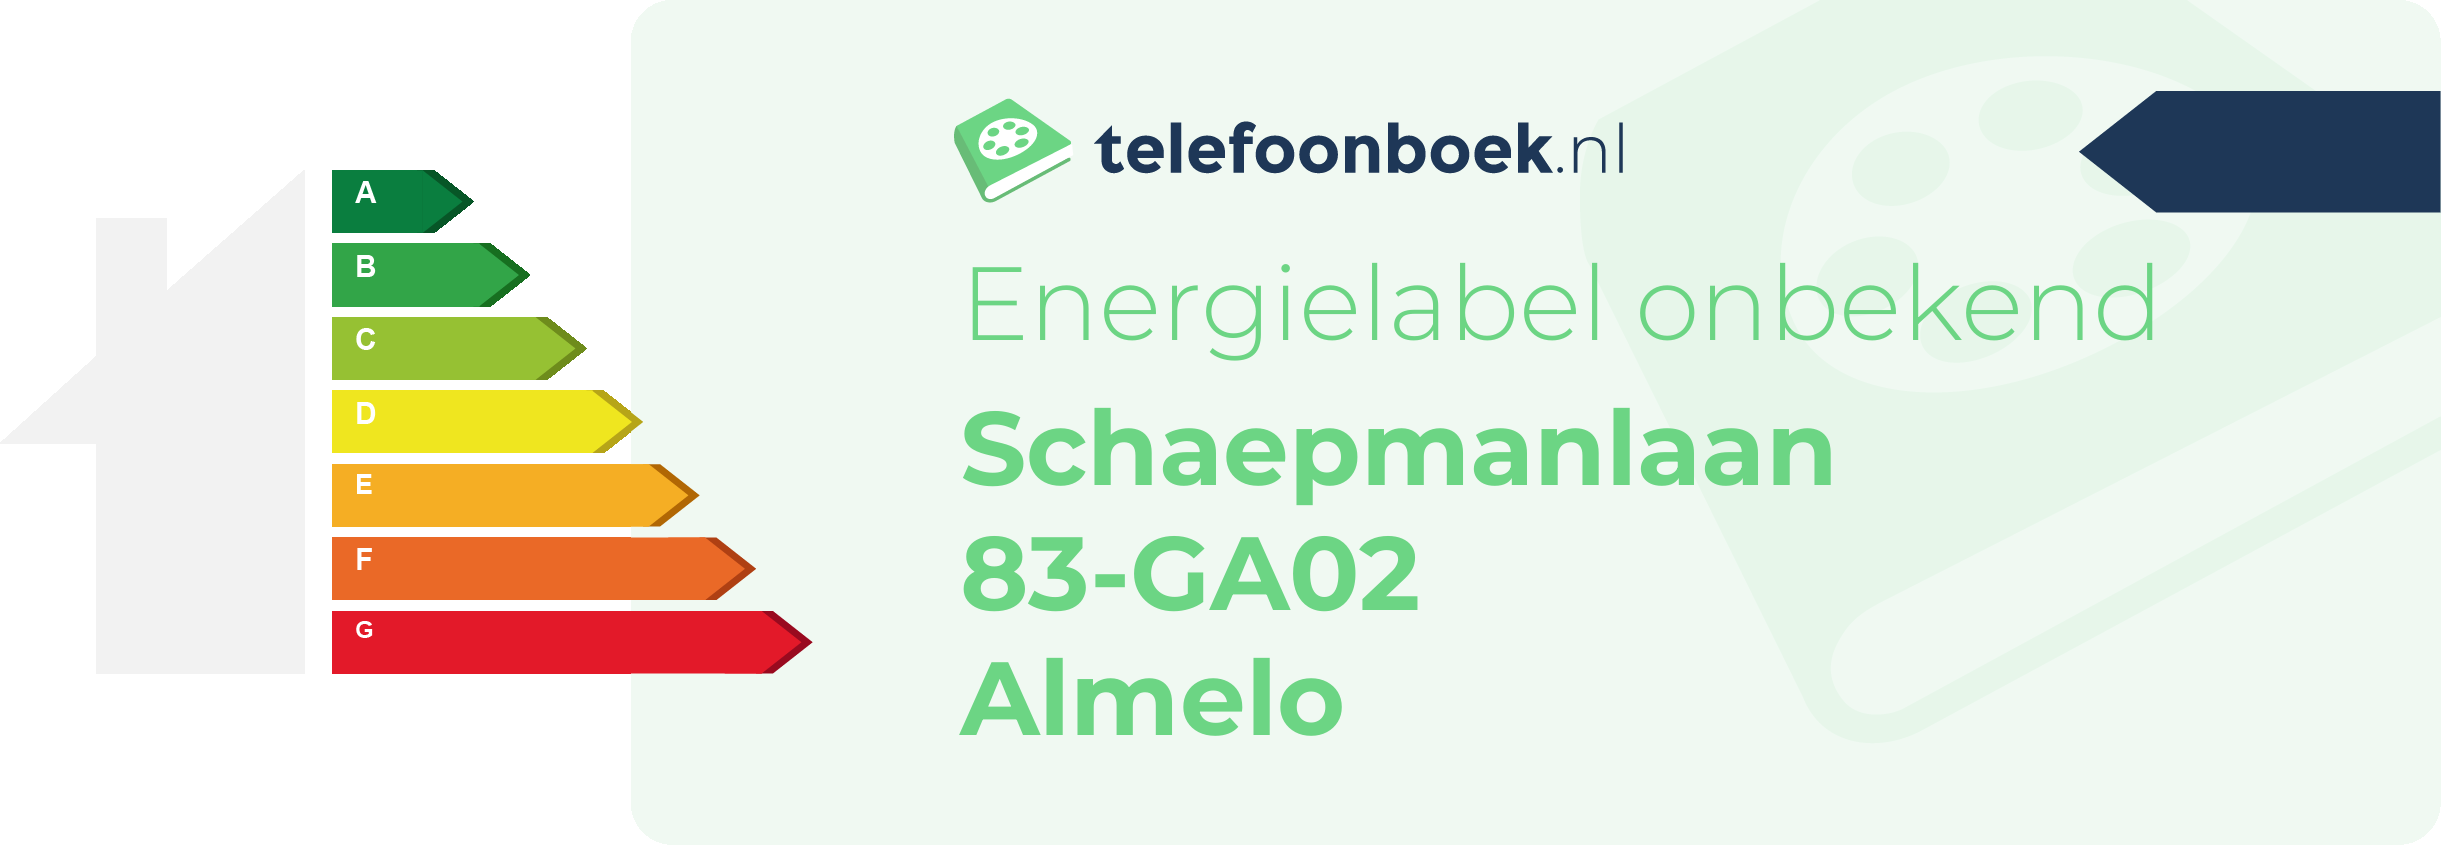 Energielabel Schaepmanlaan 83-GA02 Almelo